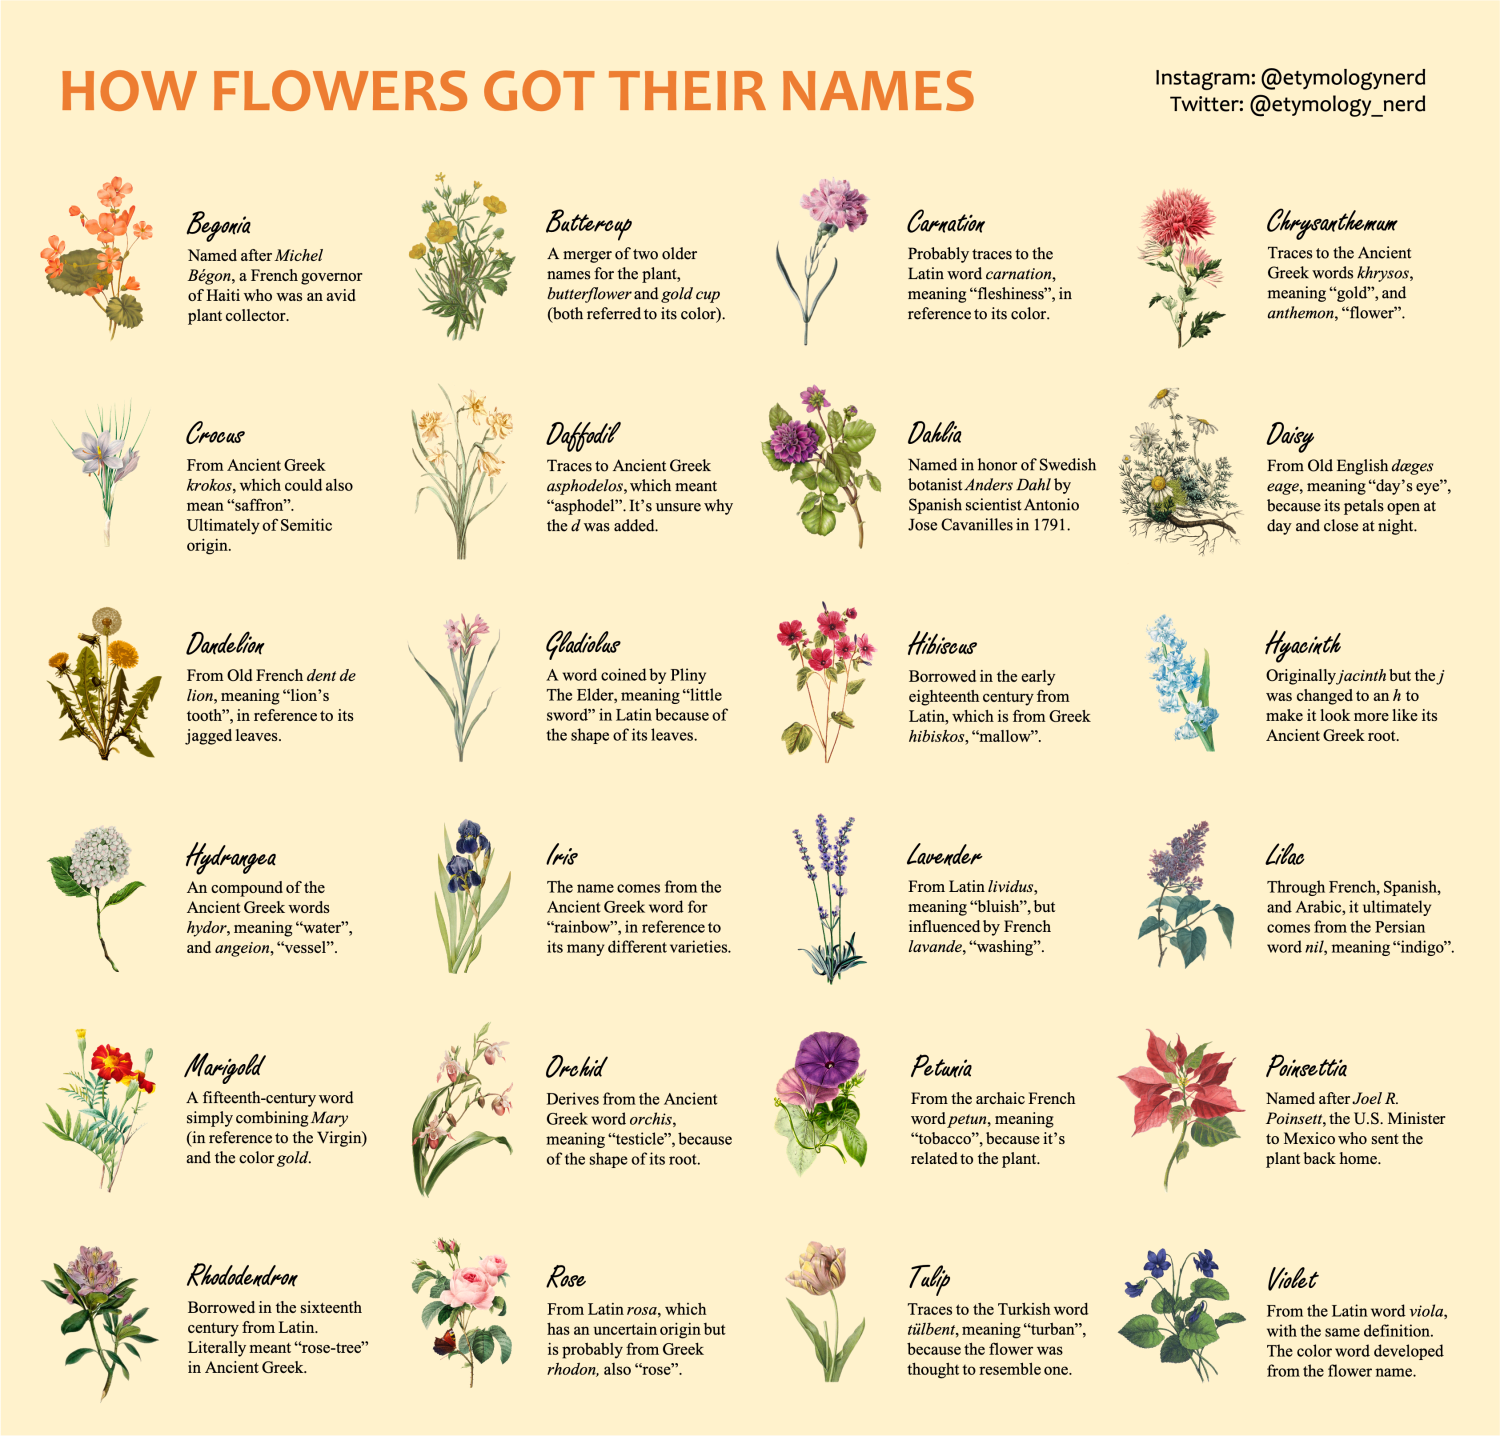 I made a guide explaining how flowers got their names!